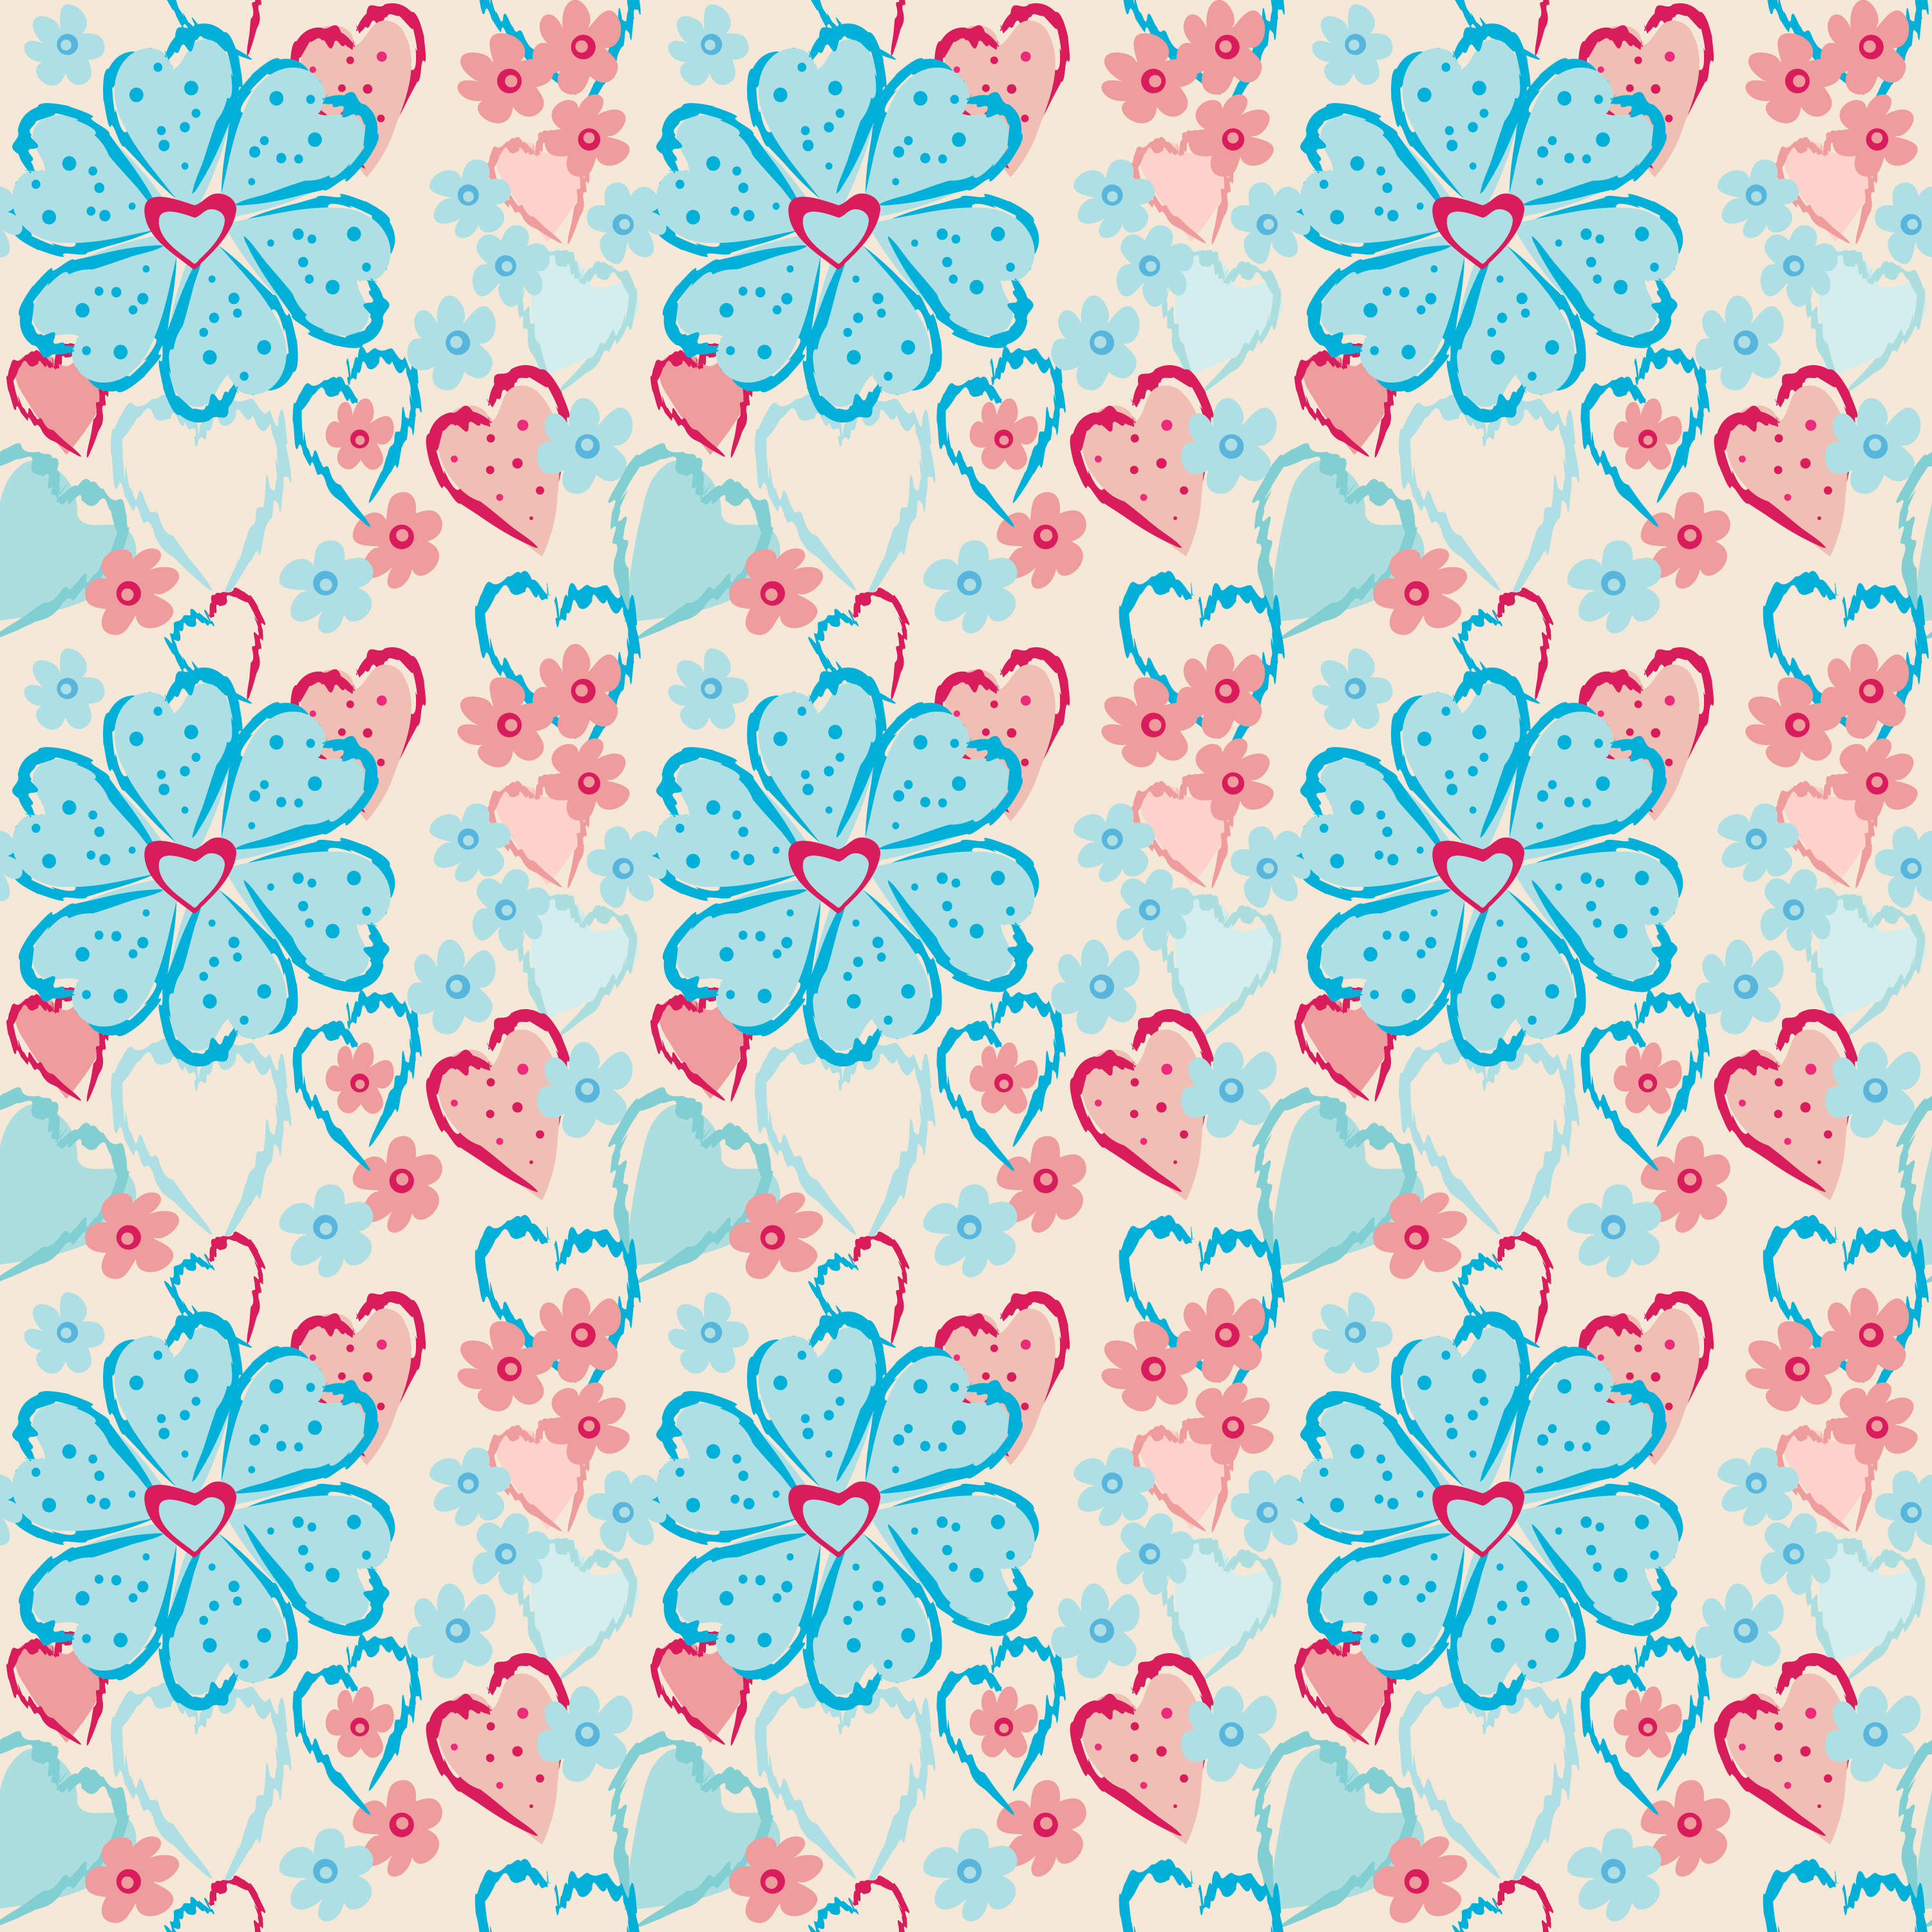 壁紙 背景イラスト 花の模様 柄 パターン No 136 ハートフラワー 赤青